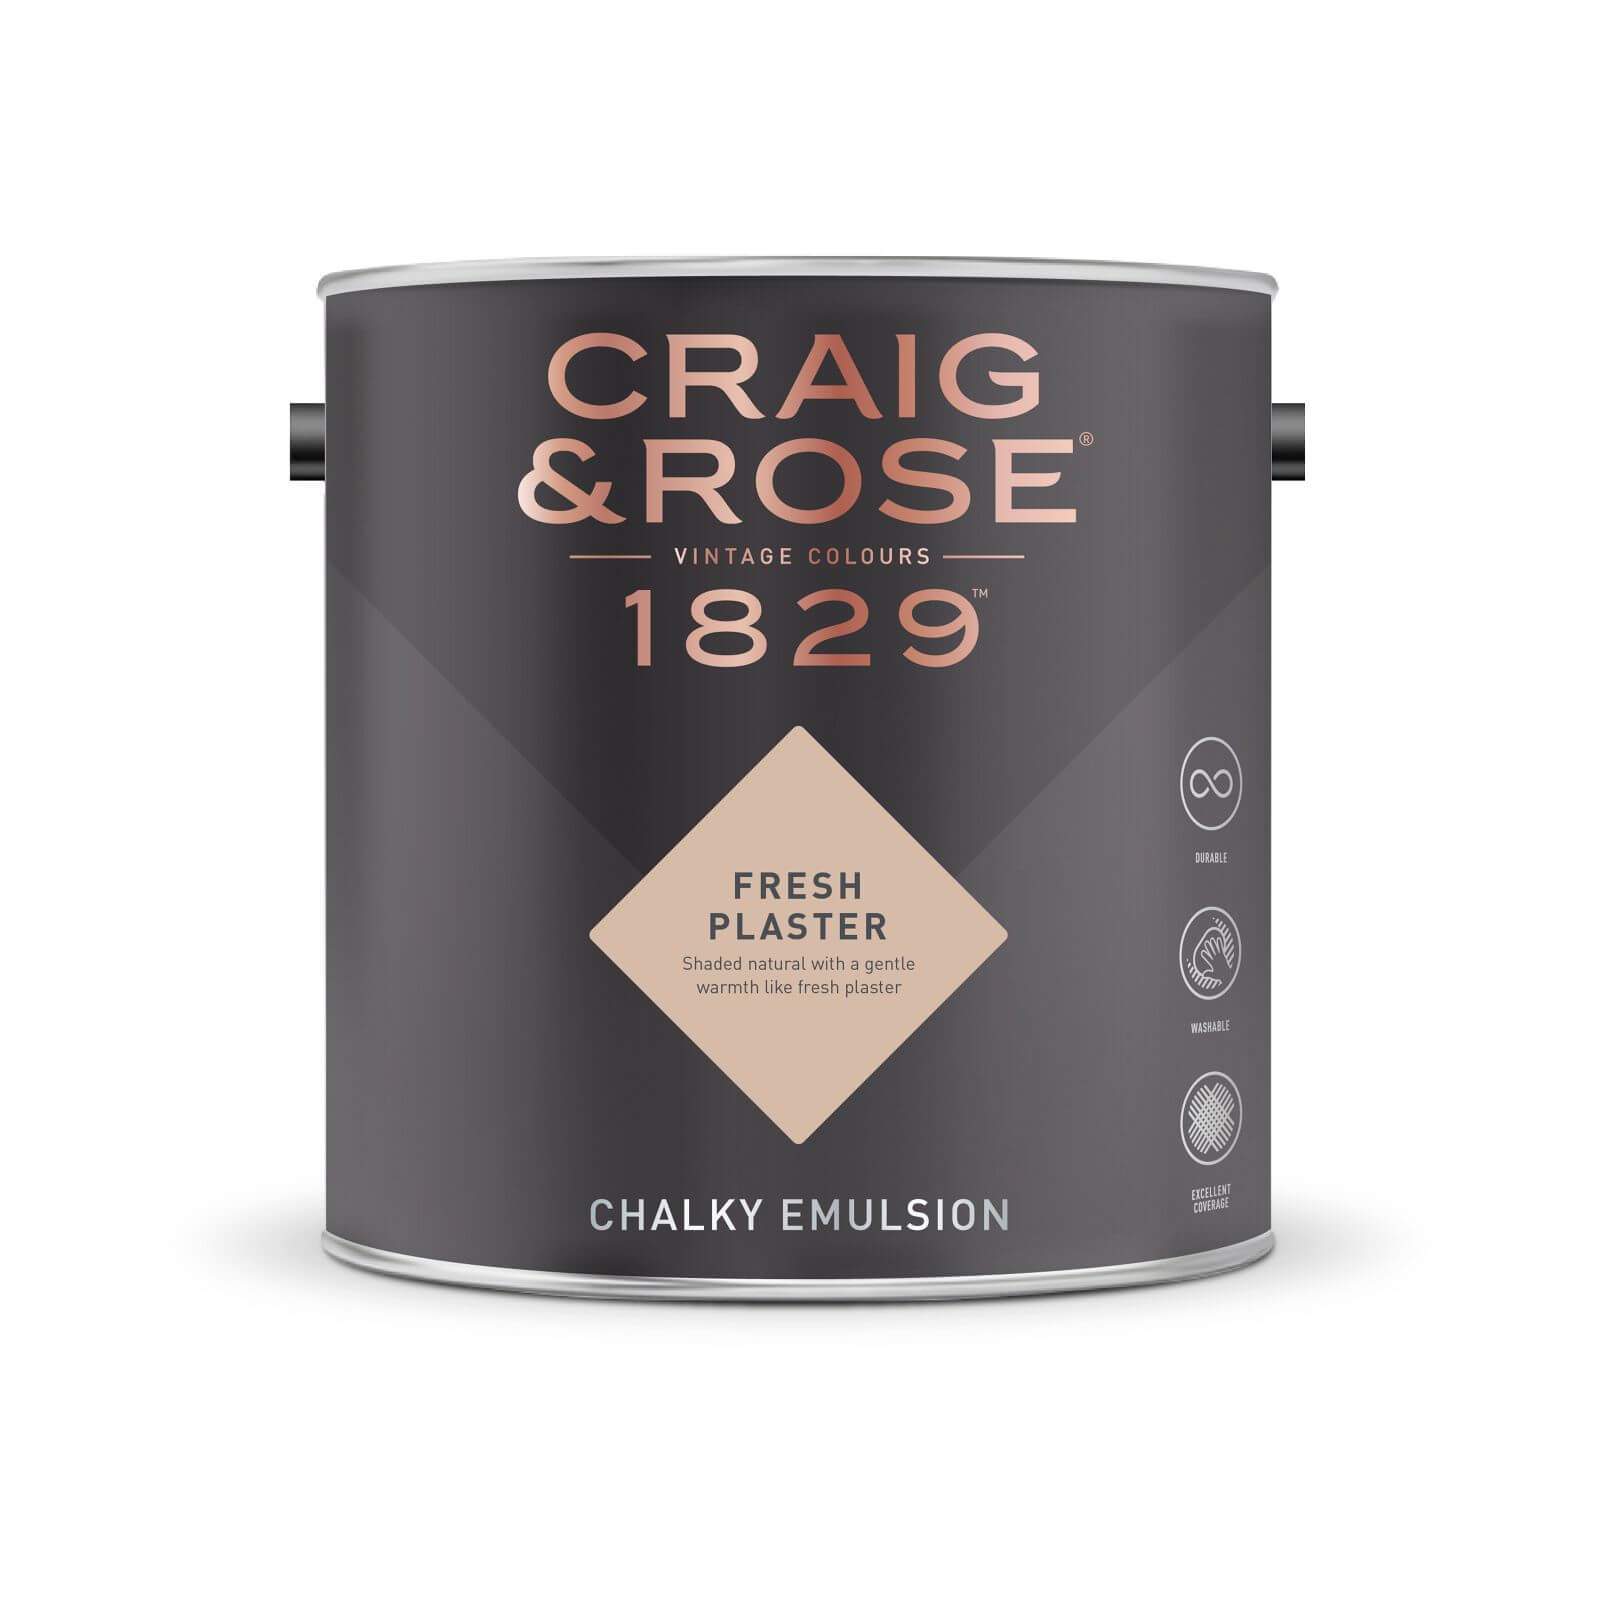 Craig & Rose 1829 Chalky Emulsion Paint Fresh Plaster - Tester 50ml